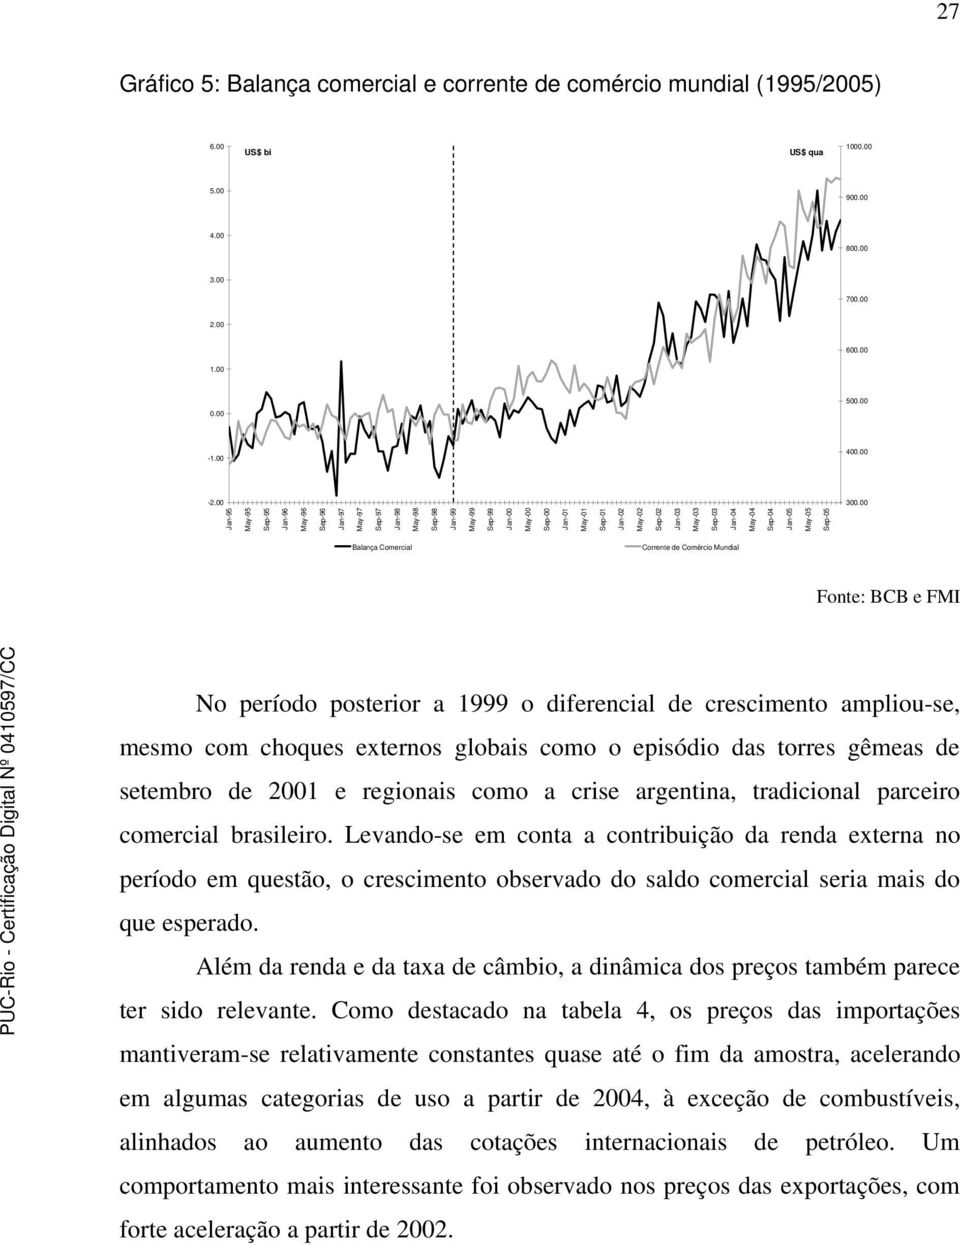 May-04 Sep-04 Jan-05 May-05 Sep-05 Balança Comercial Corrente de Comércio Mundial Fonte: BCB e FMI No período posterior a 1999 o diferencial de crescimento ampliou-se, mesmo com choques externos